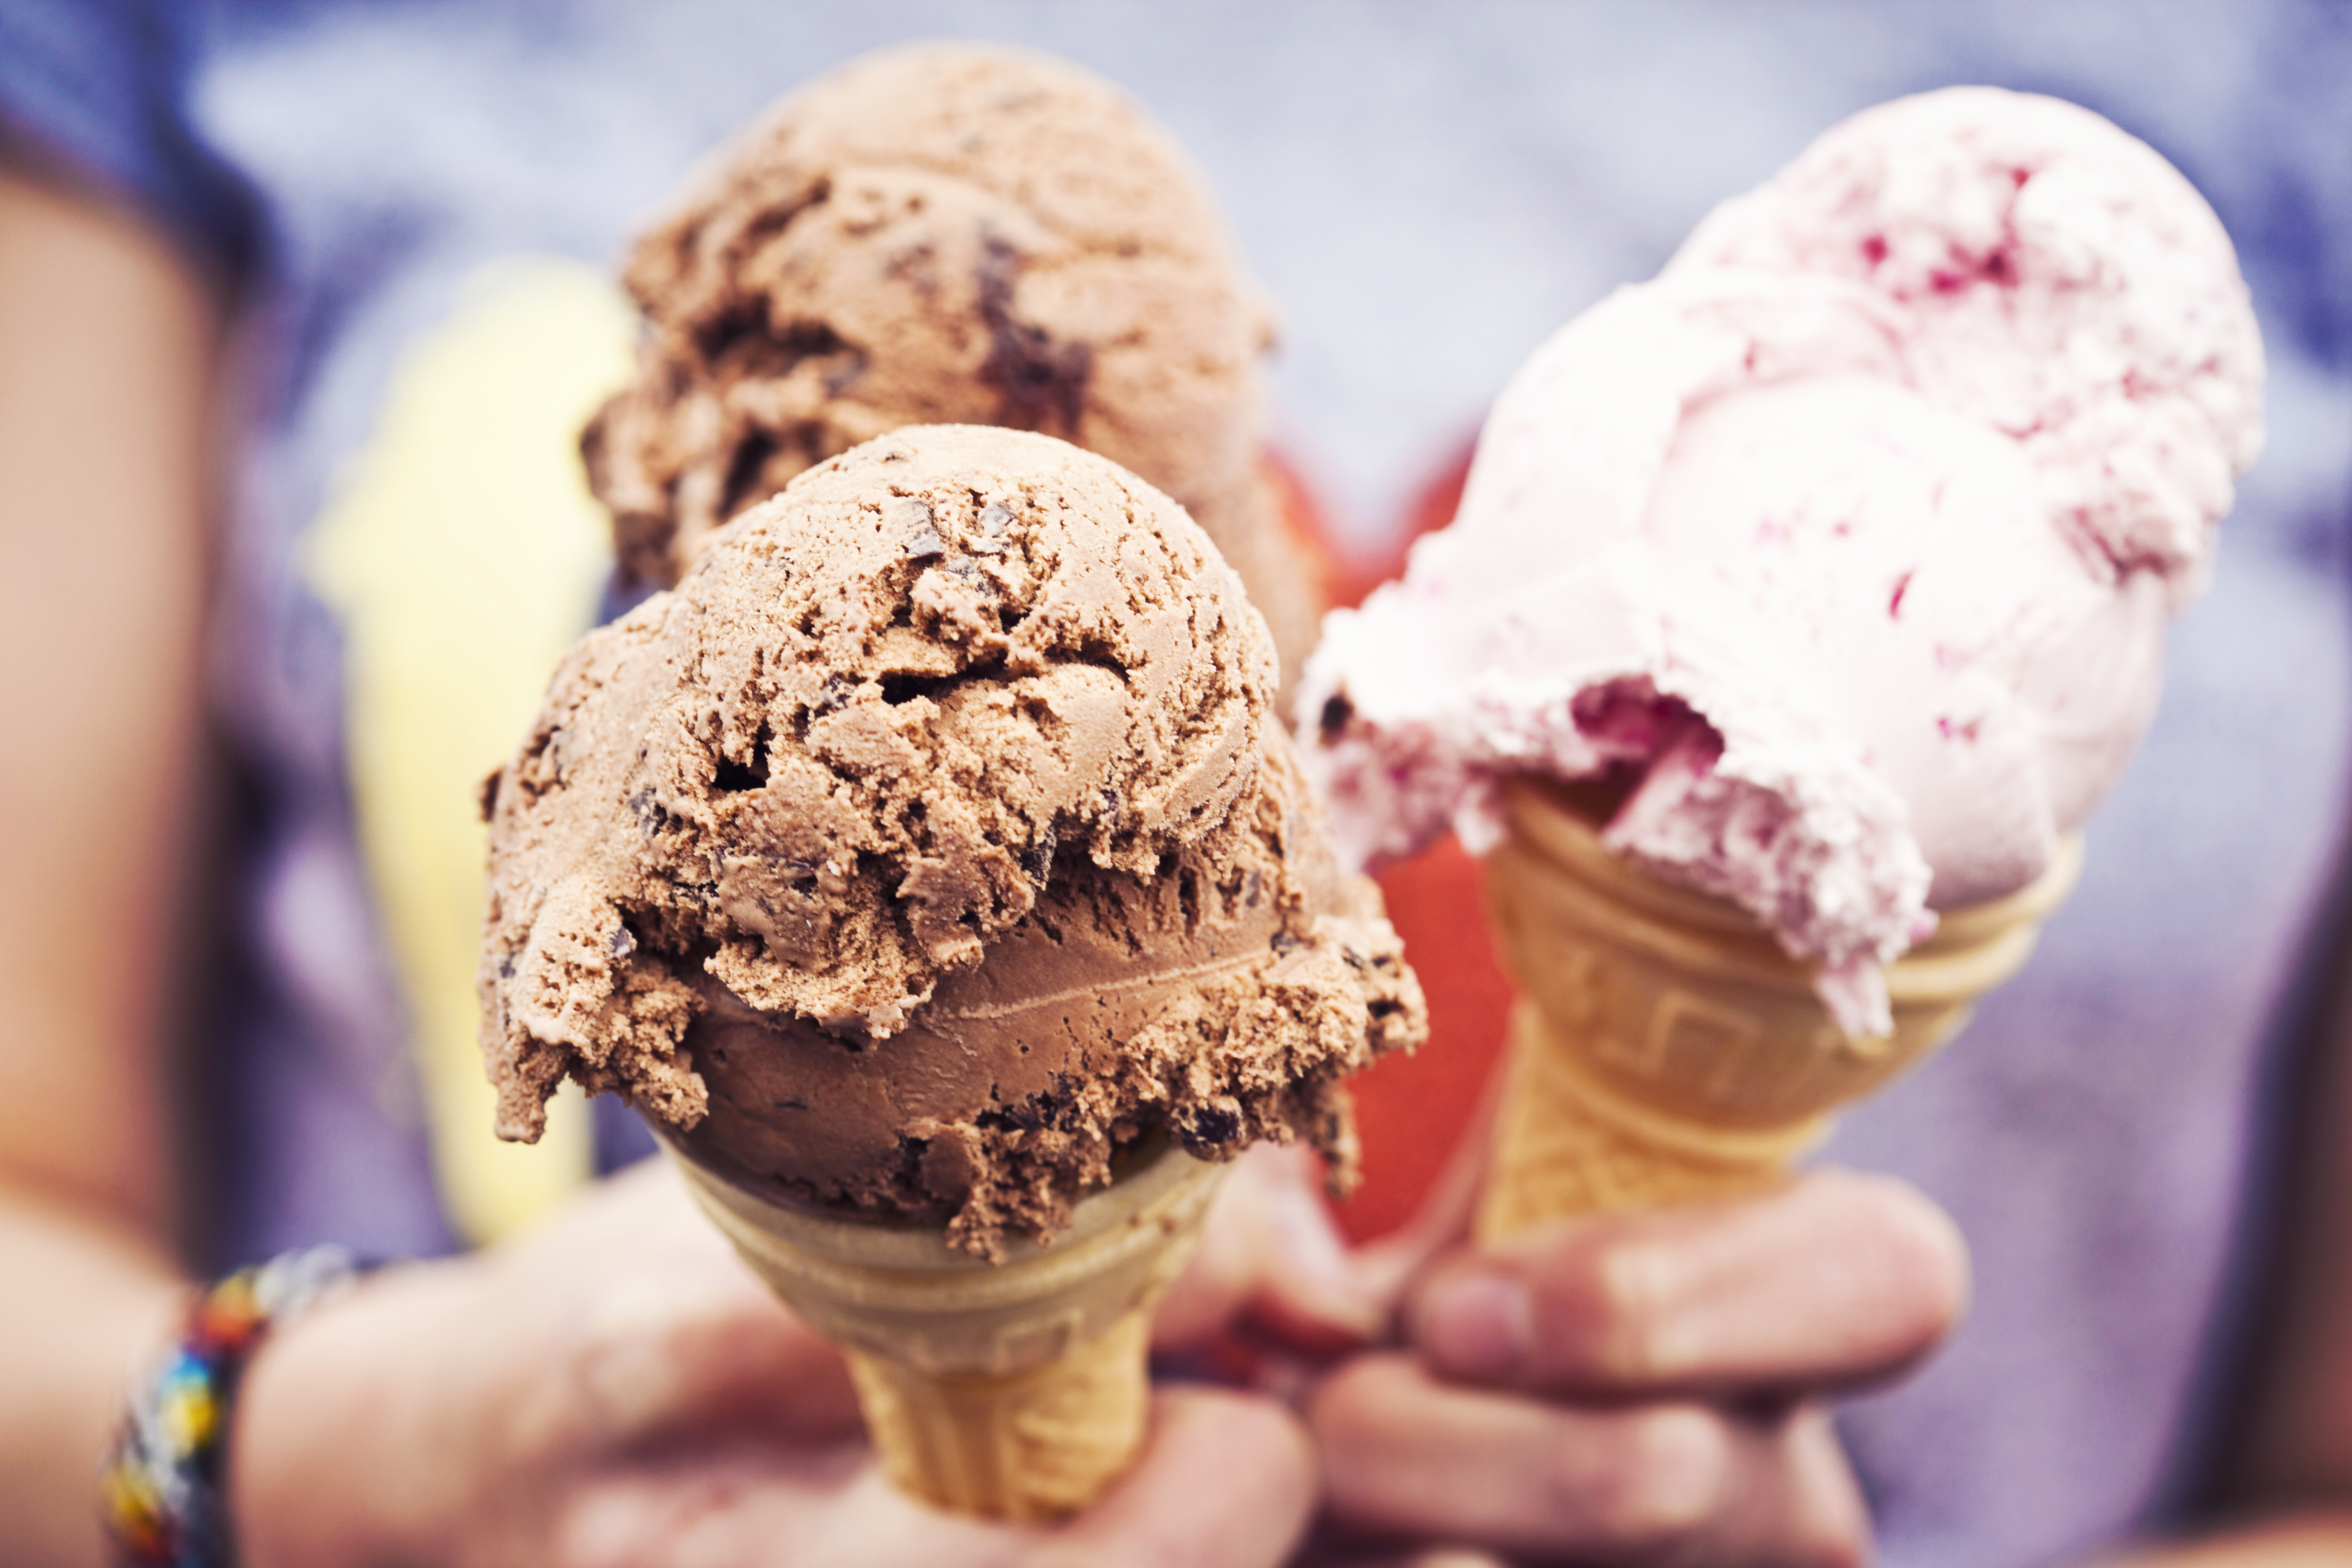 Айс Крим мороженщик. Мороженое рожок. Шоколадное мороженое в рожке. Мороженое реклама.